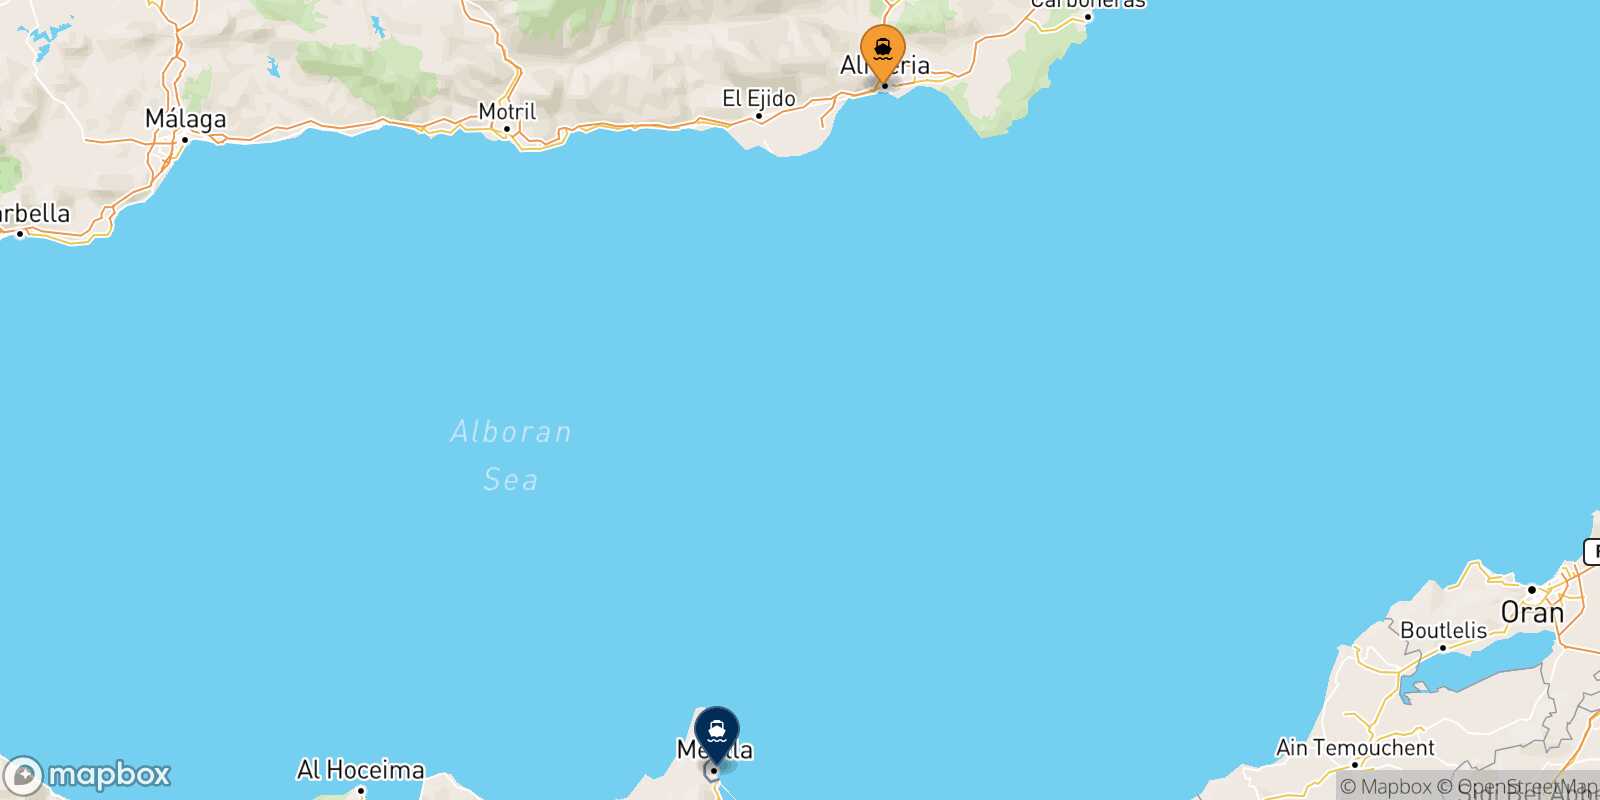 Mappa delle destinazioni raggiungibili da Almería